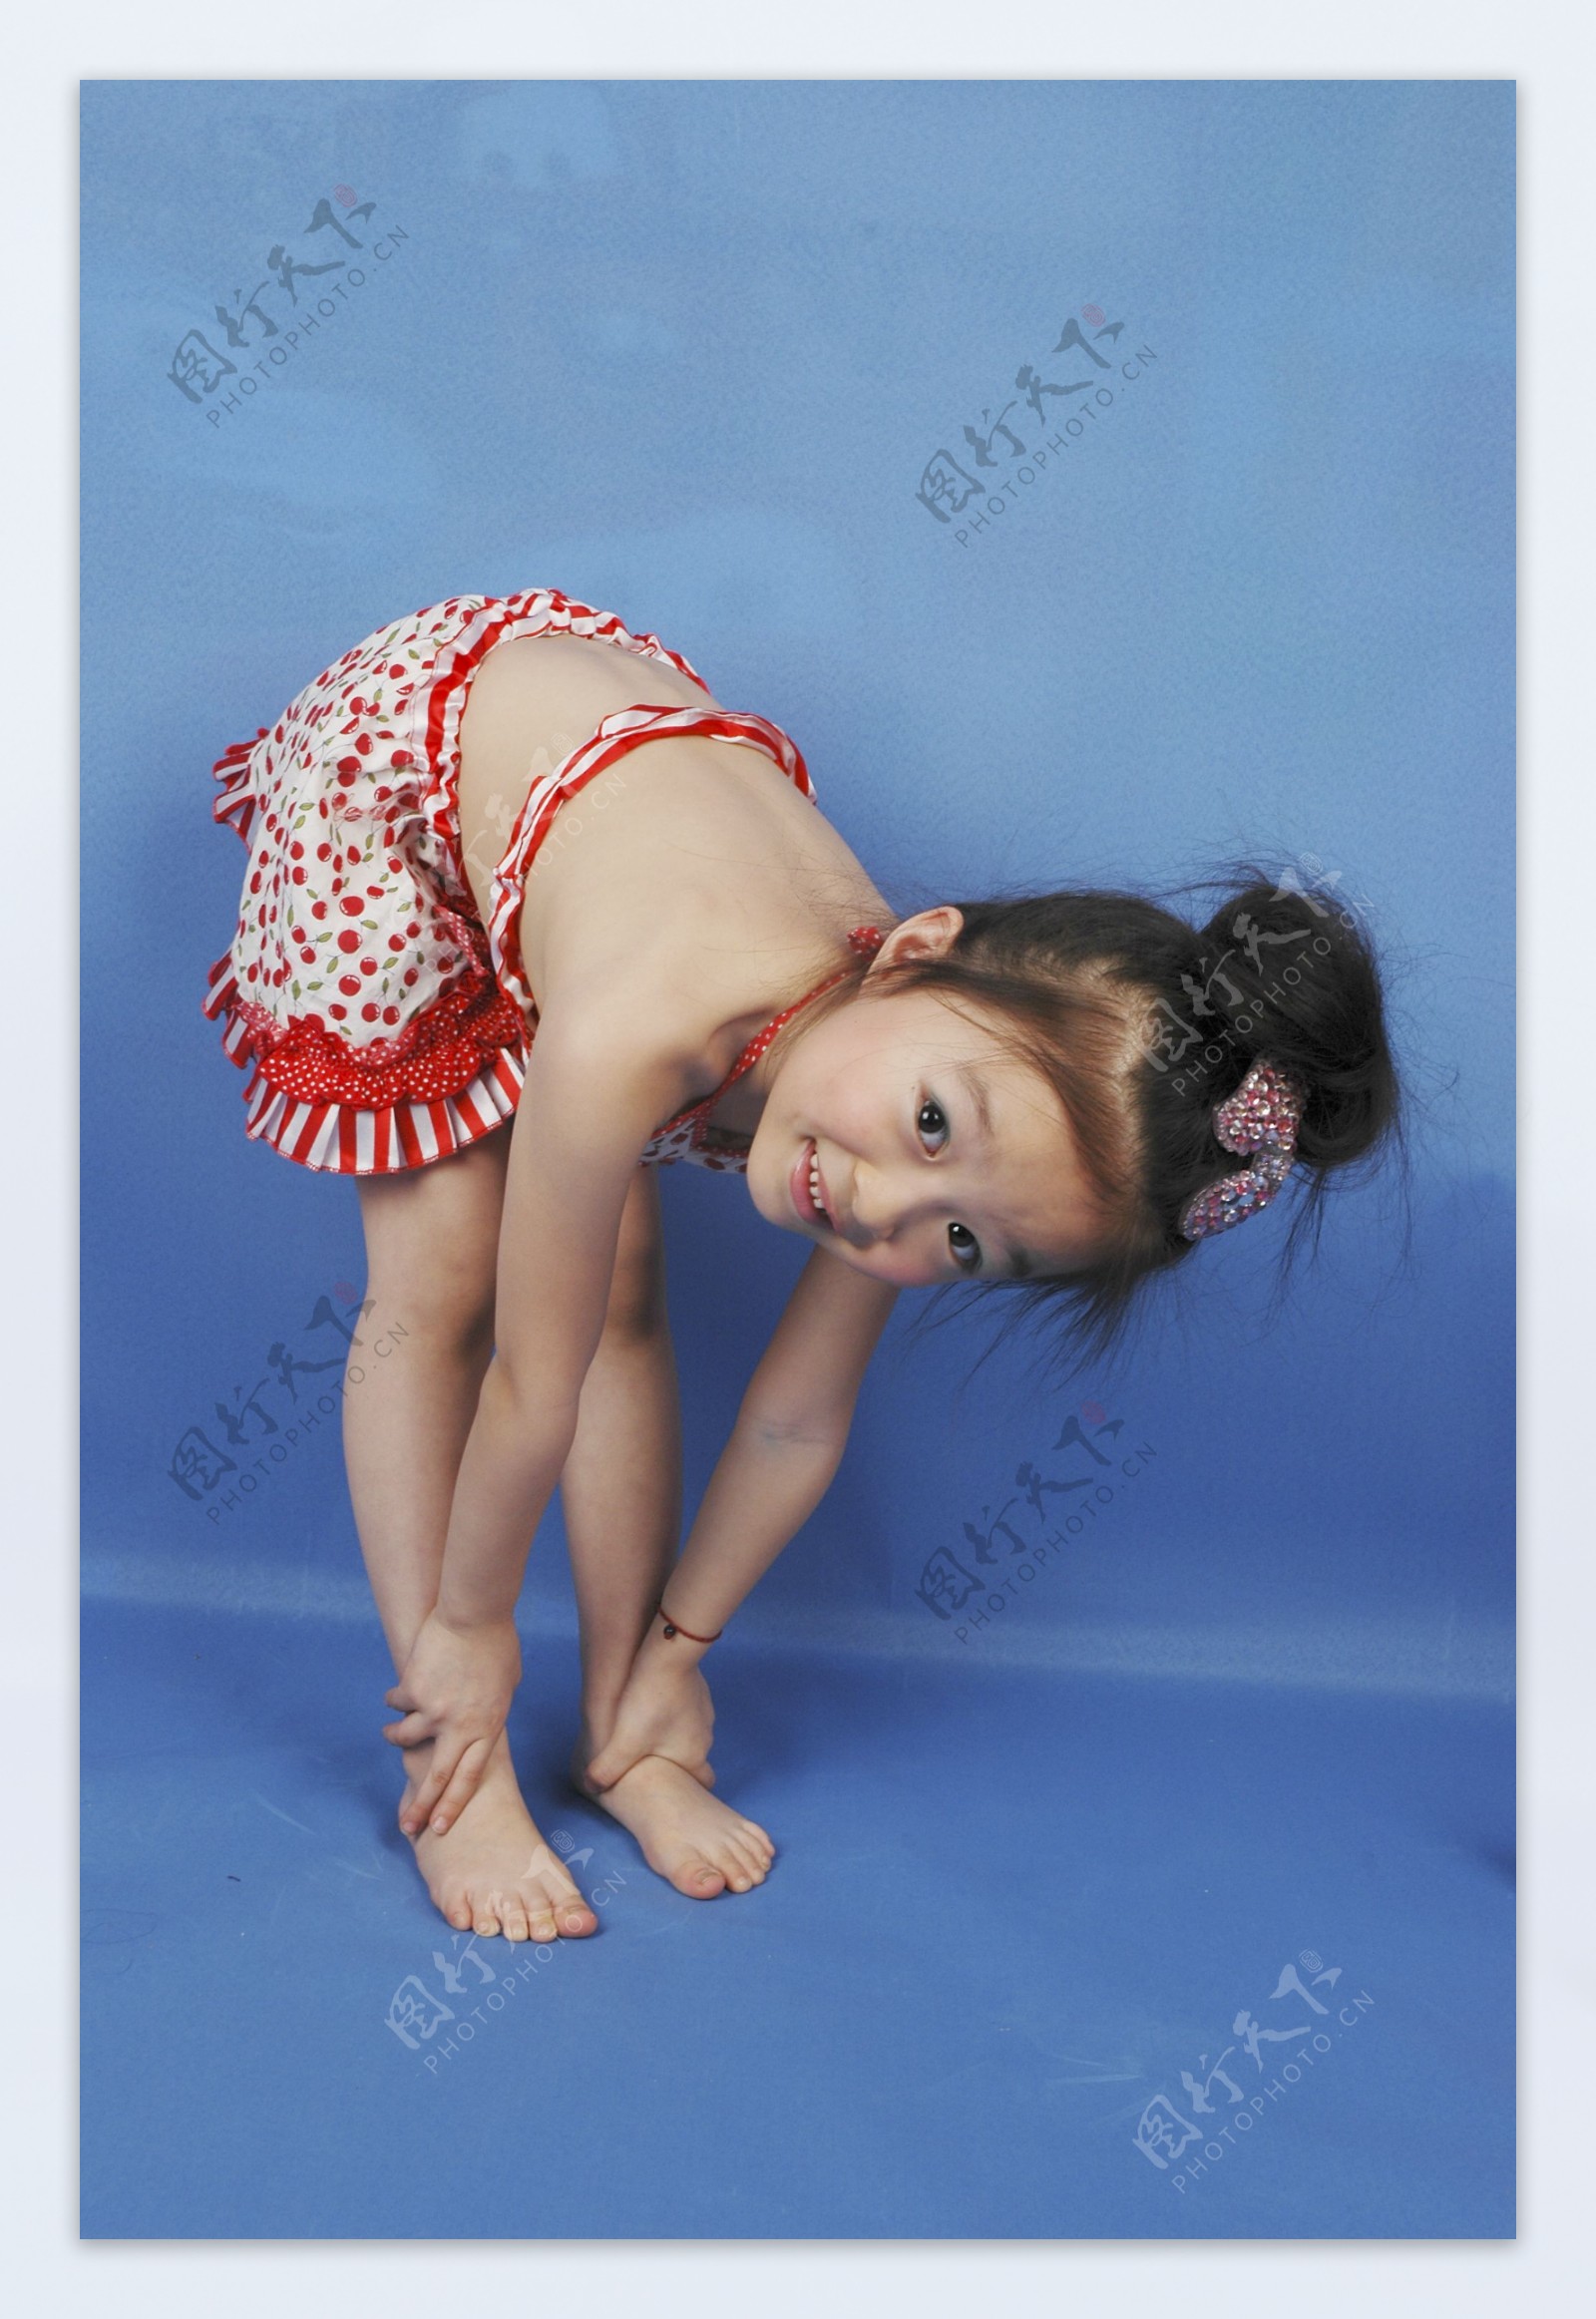 最漂亮美丽的小姑娘漂亮儿童漂亮儿童幼儿小孩人物图库儿童摄影300DPIJPG图片